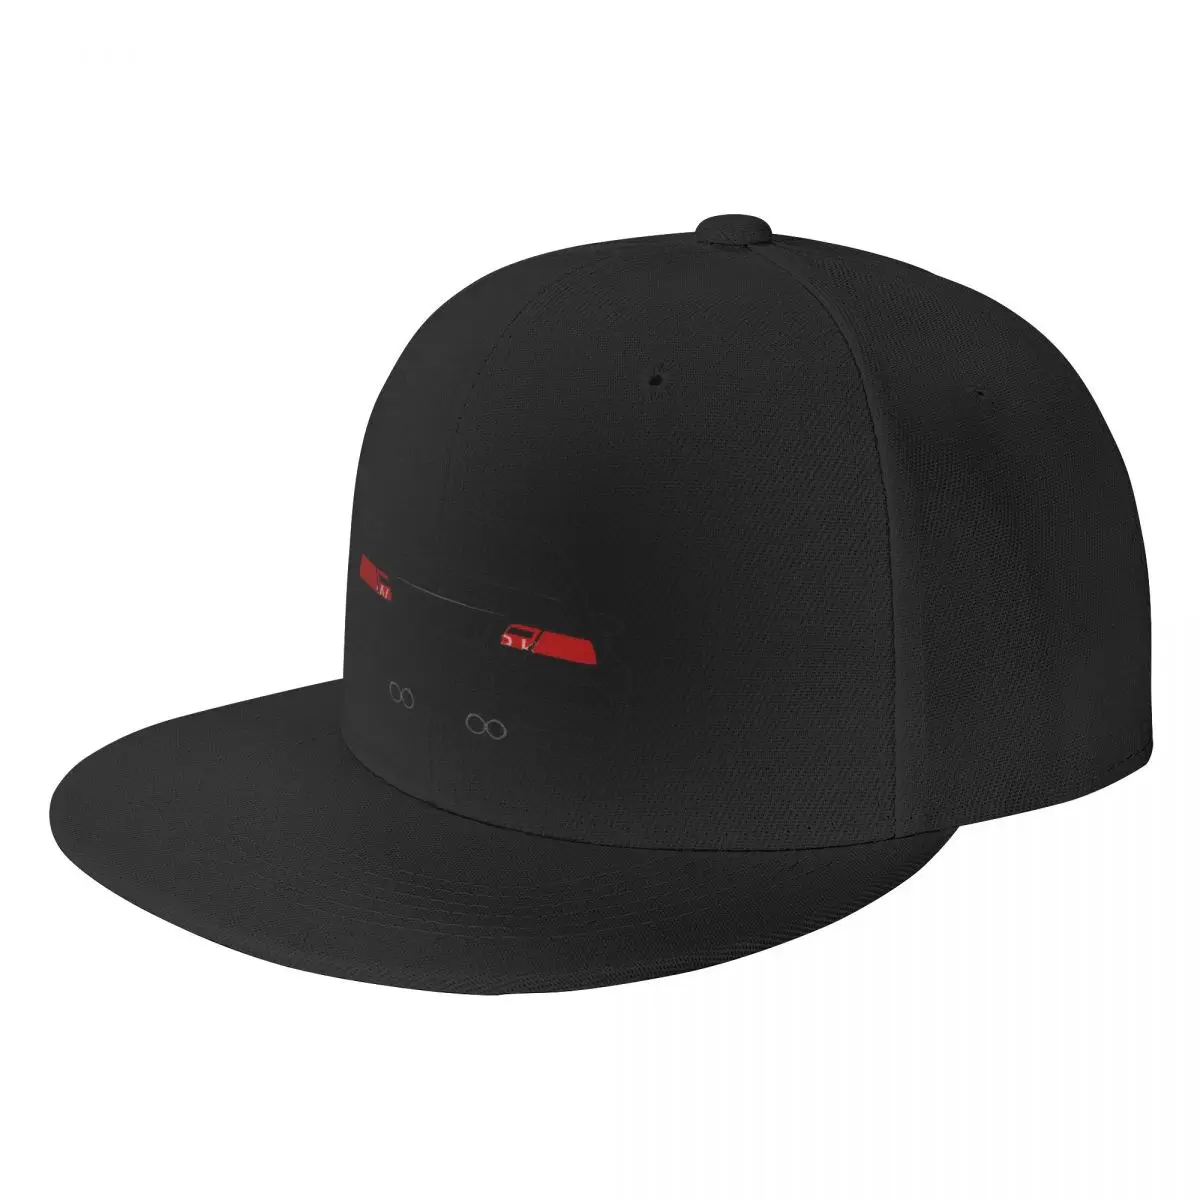 

Плоская шляпа M3 E46, бейсболка в стиле ретро, практичный спортивный хороший подарок